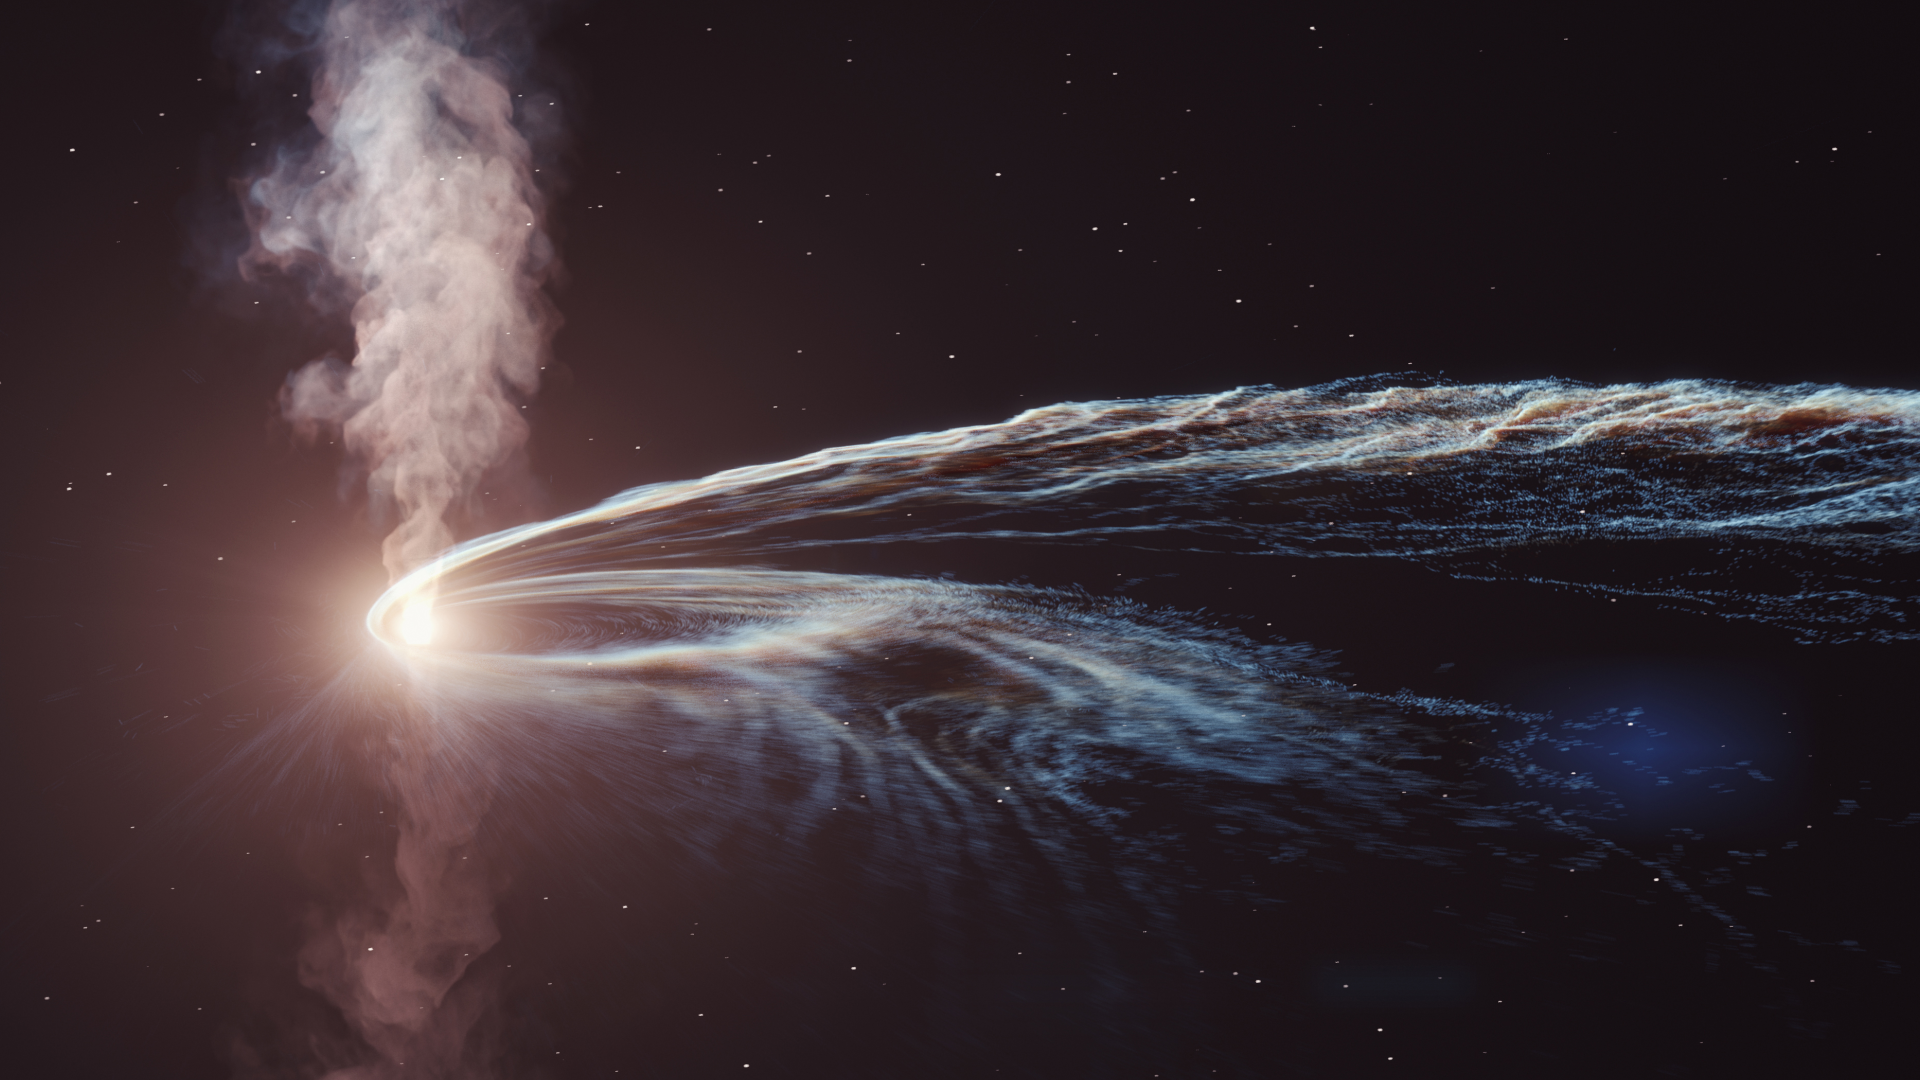 Não caiu bem um buraco negro “vomitando” uma estrela; cientistas estão confusos, o que isso significa?